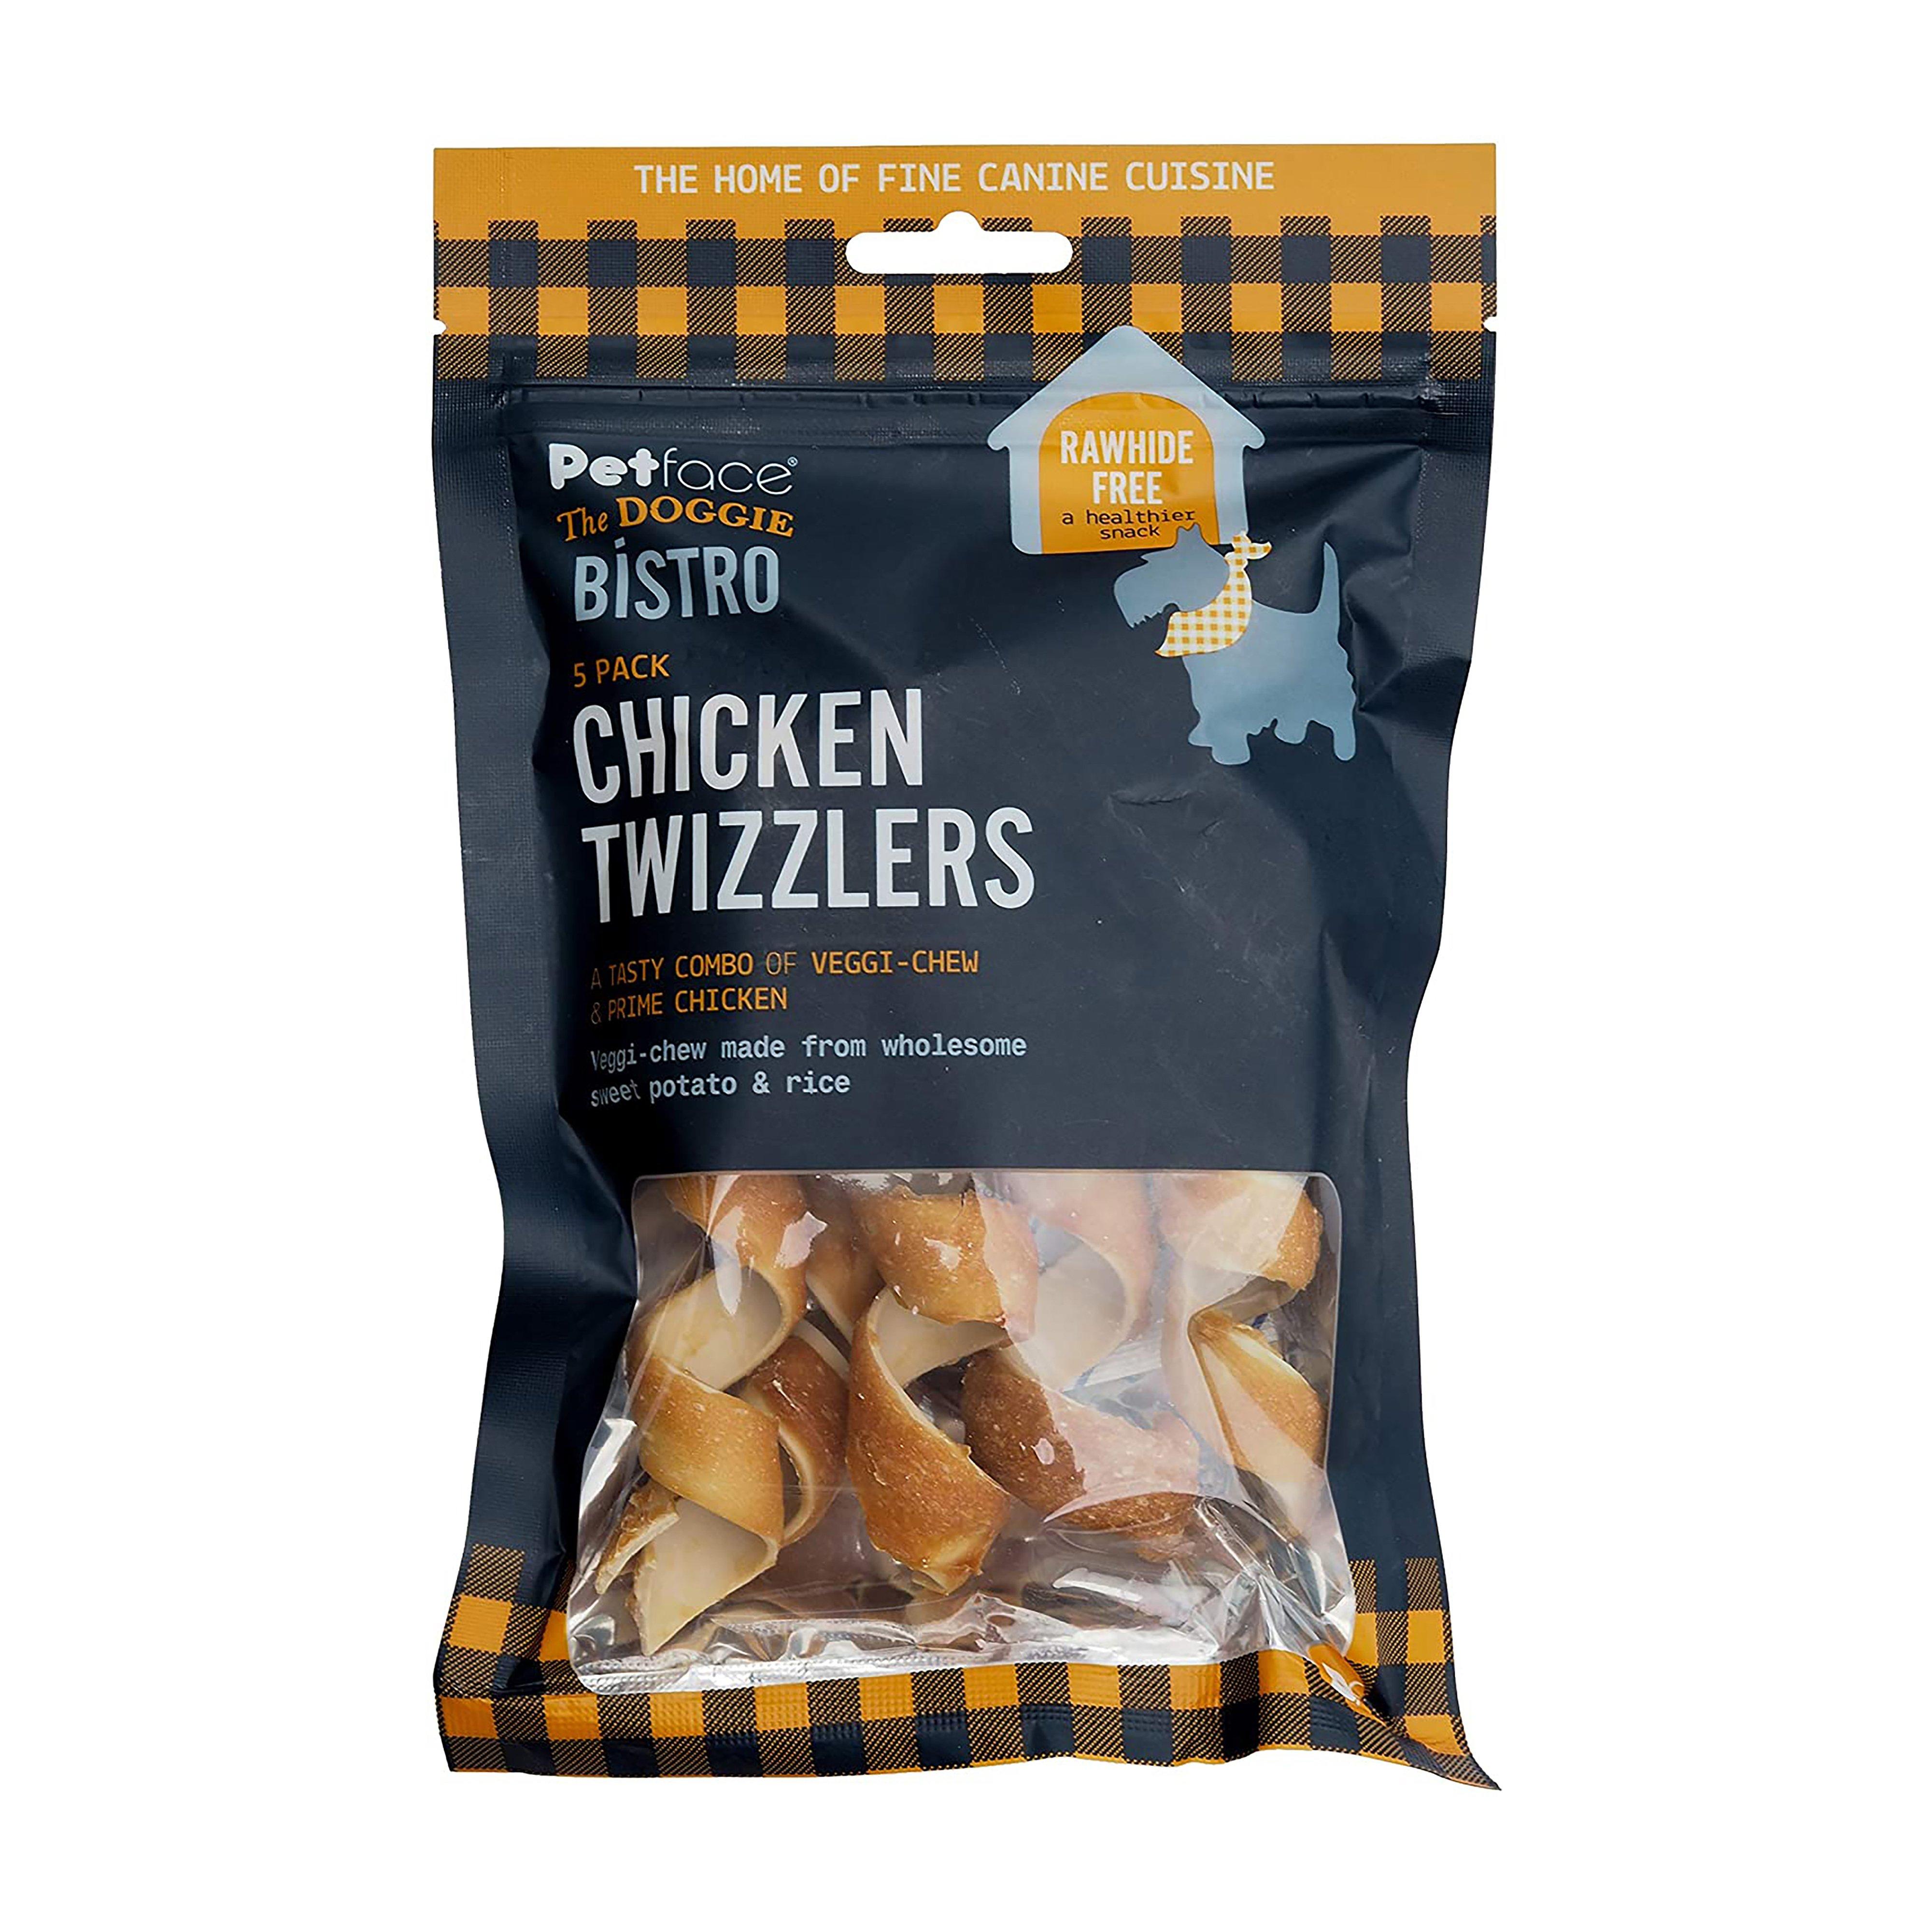 Doggie Bistro Chicken Twizzlers 5 Pack